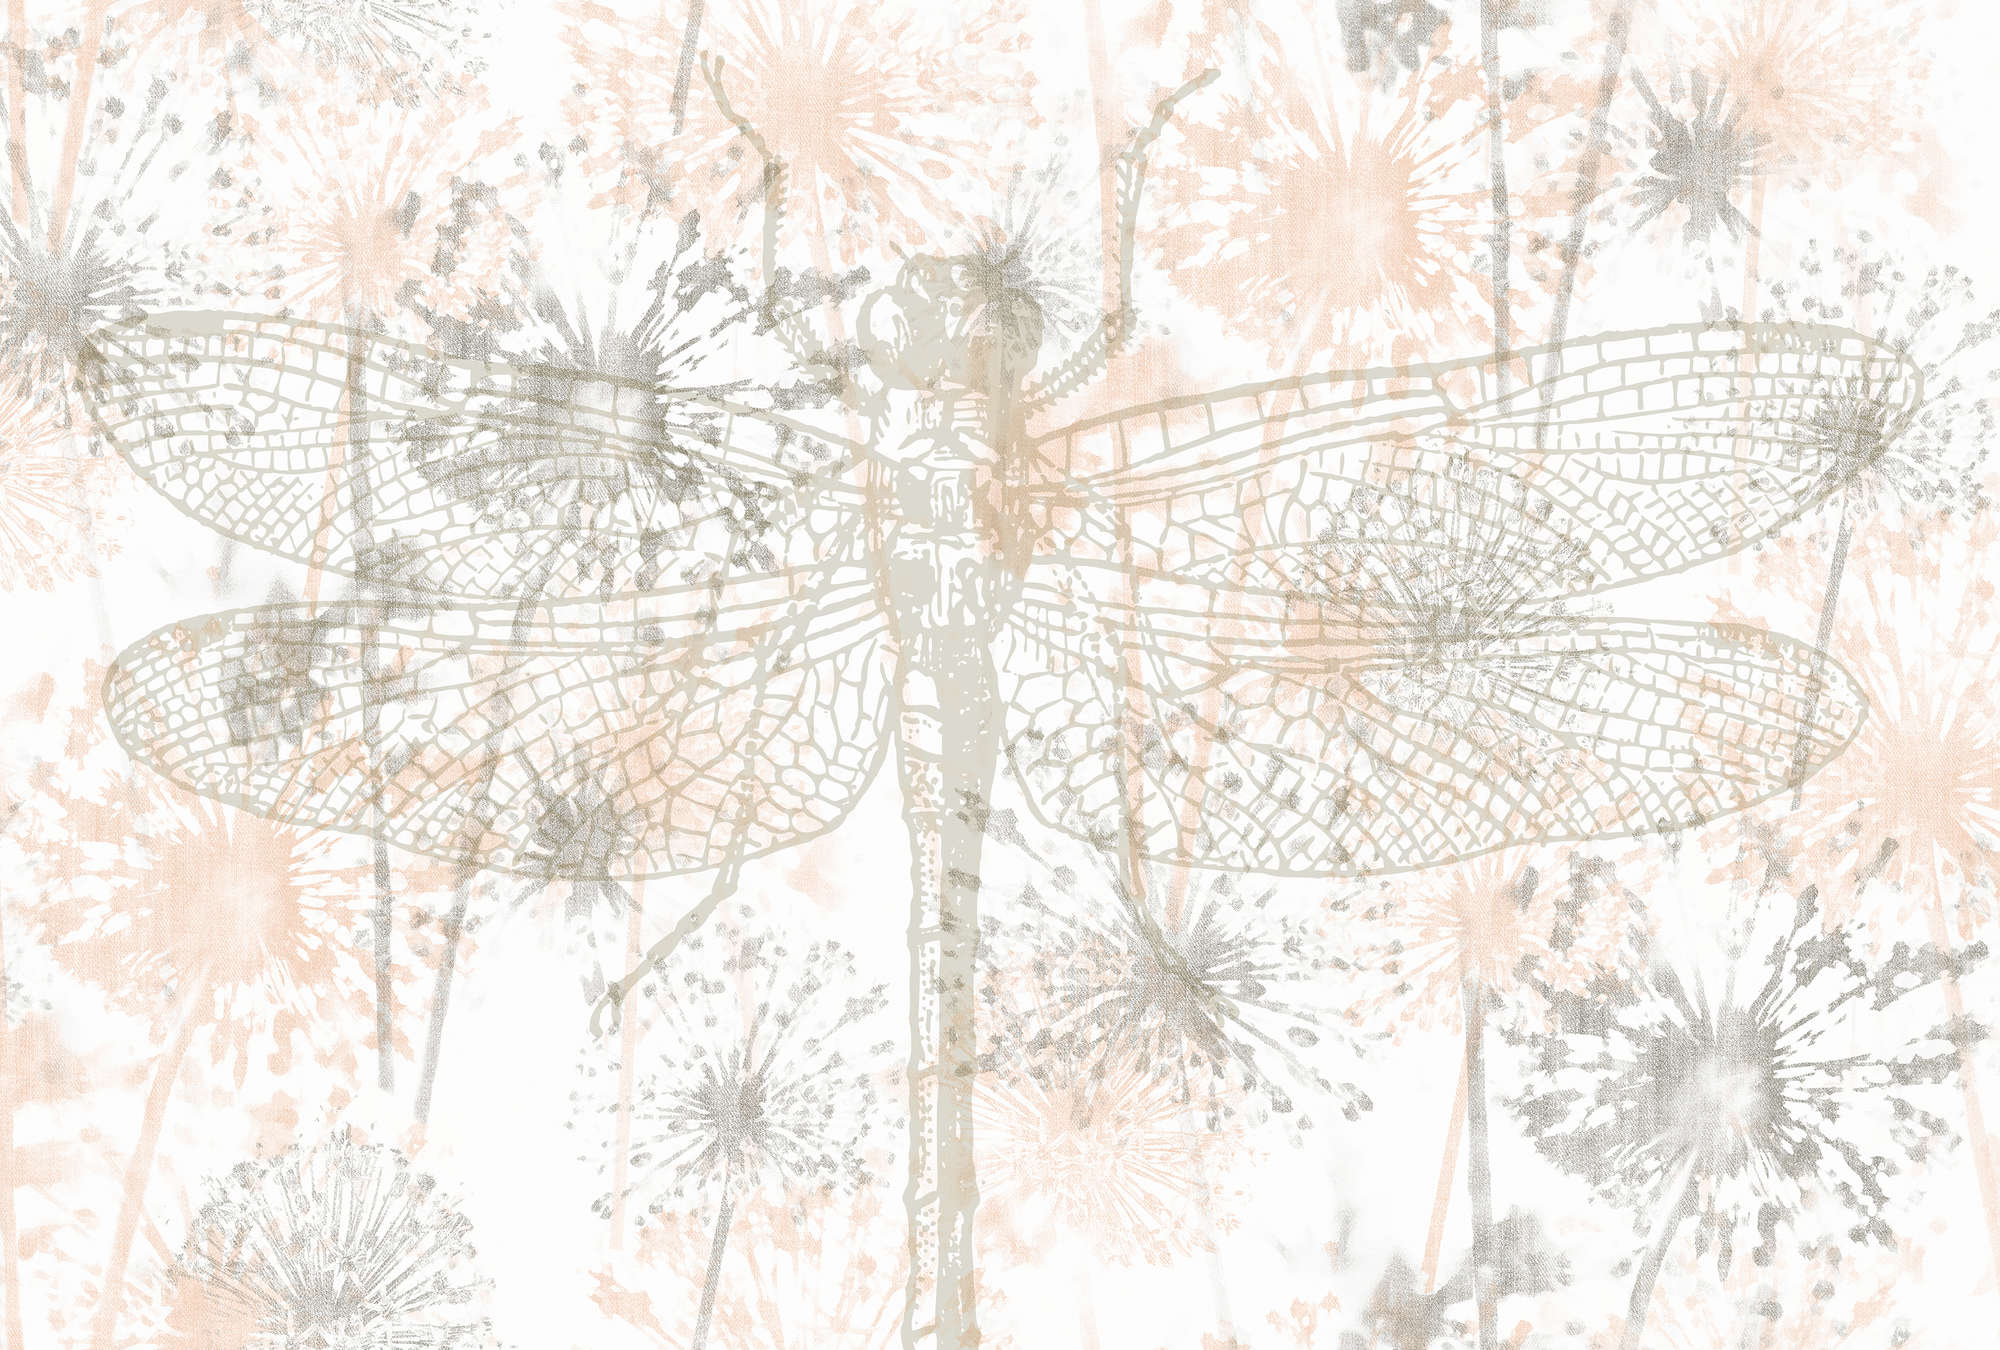             Fotomurali Libellule e fiori in design grafico - Beige, Grigio, Bianco
        